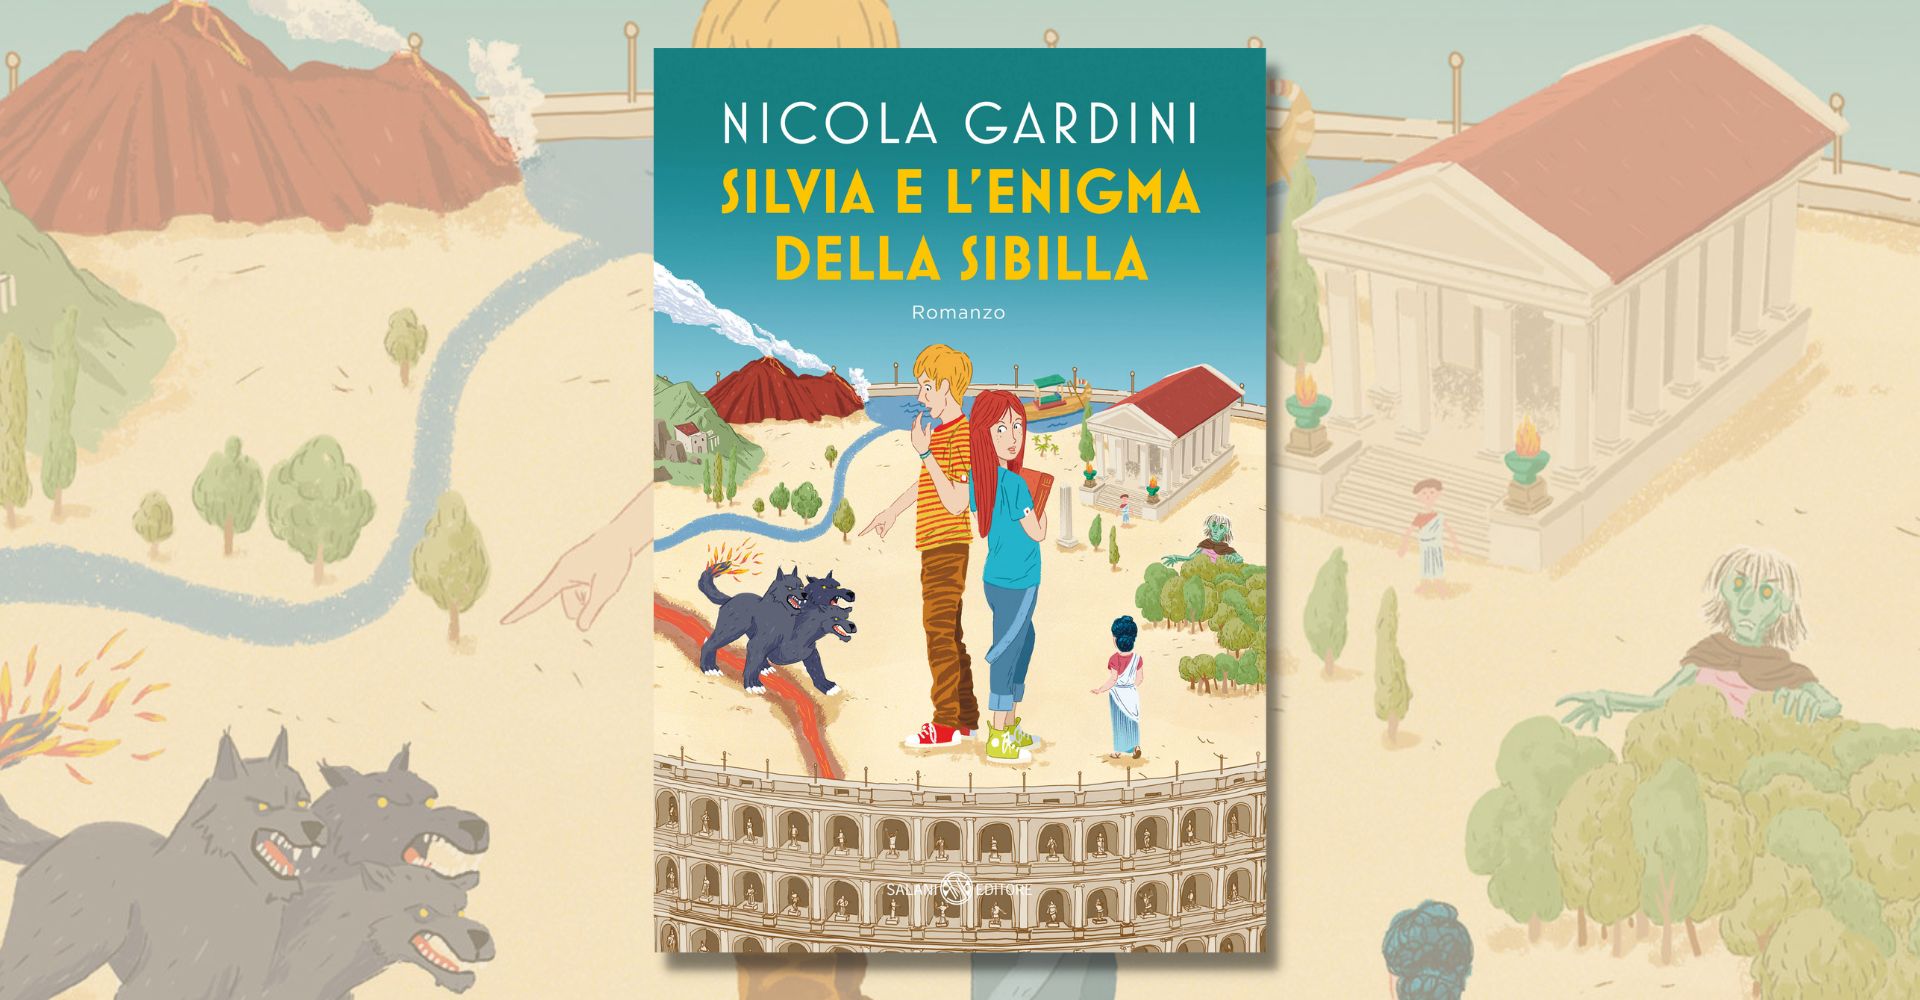 "Silvia e l'enigma della sibilla" di Nicola Gardini: un viaggio tra mitologia e avventura